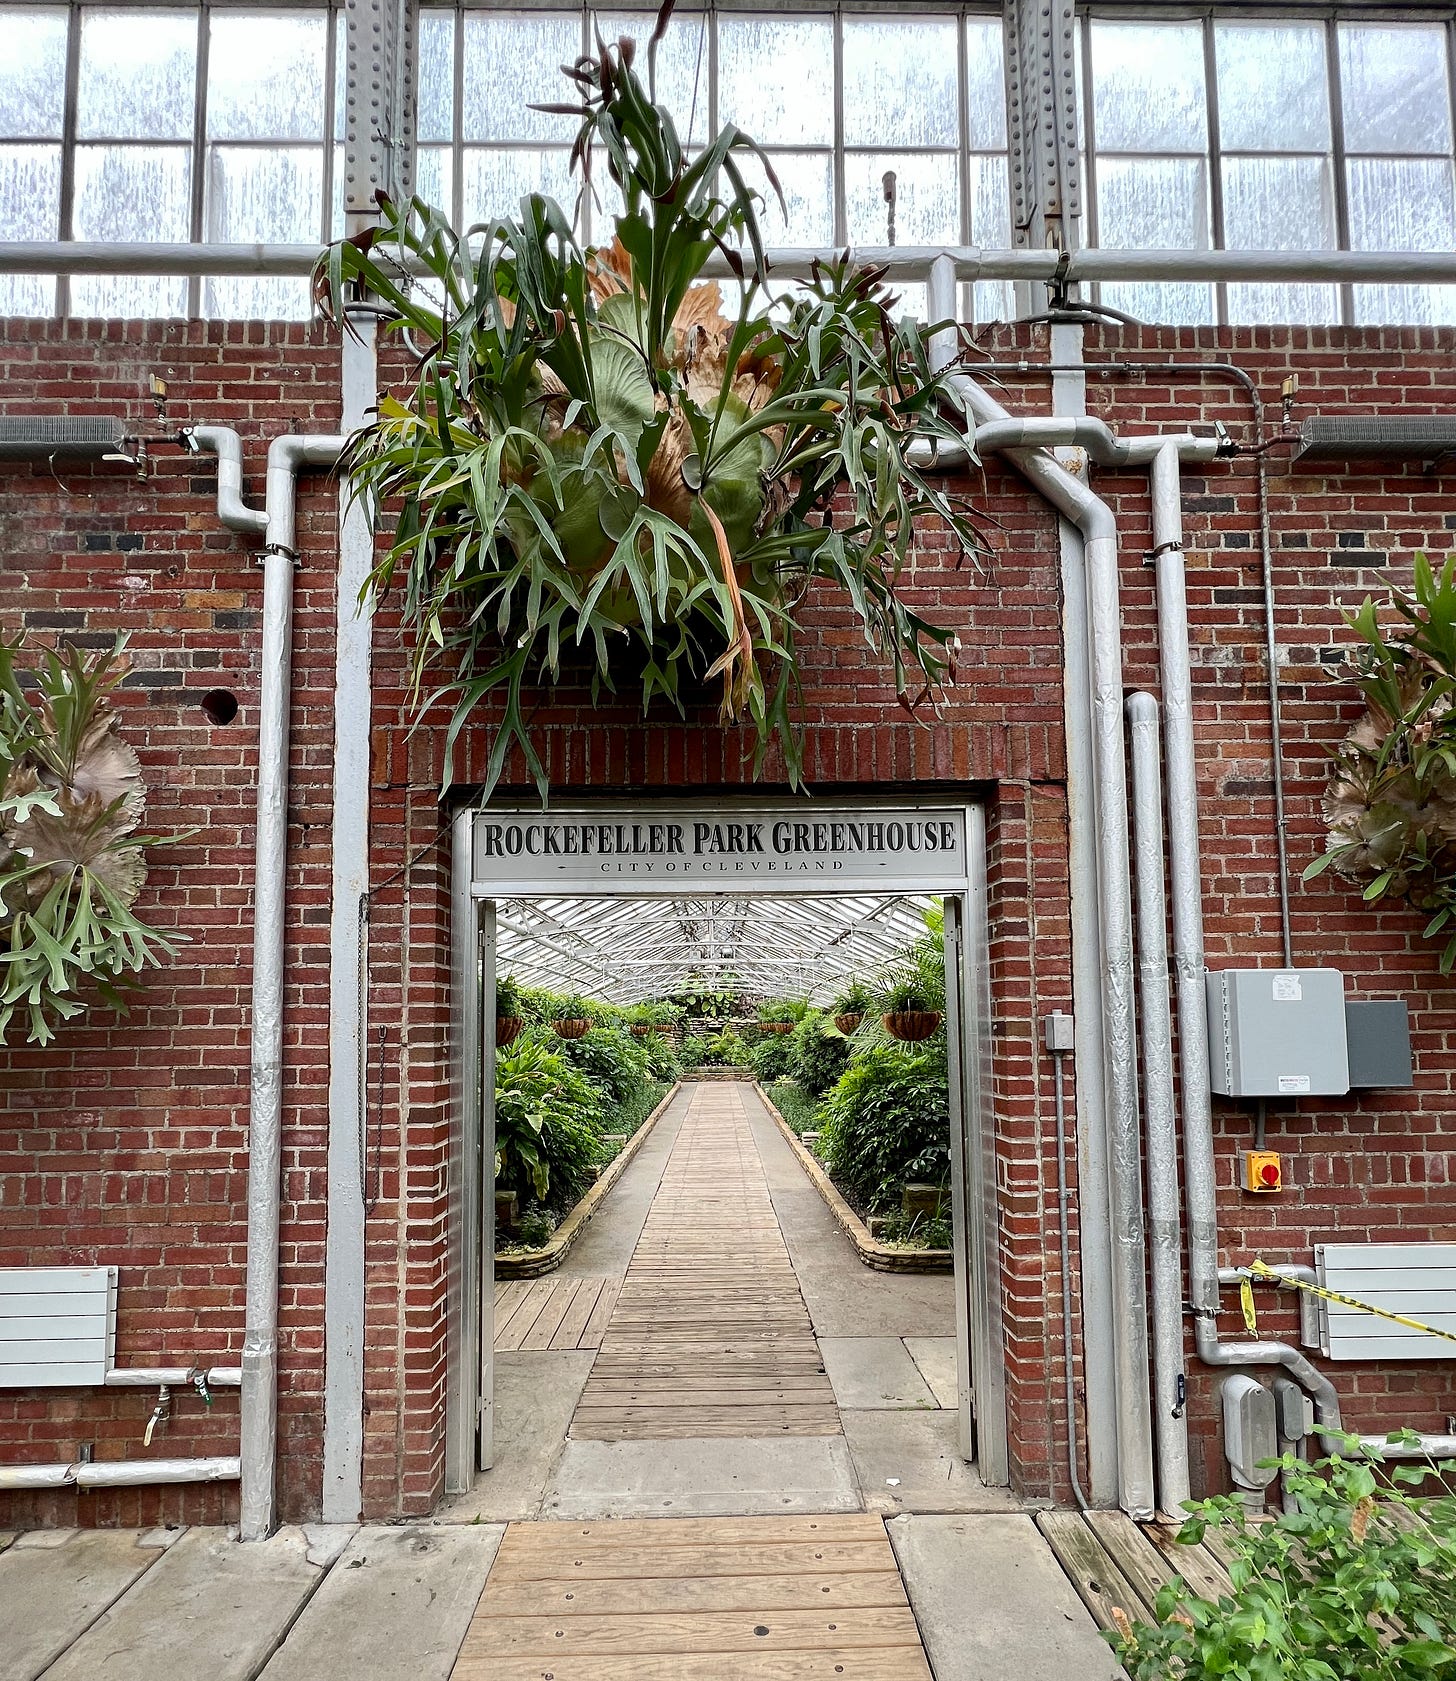 Entrance to Rockefeller Park Greenhouse